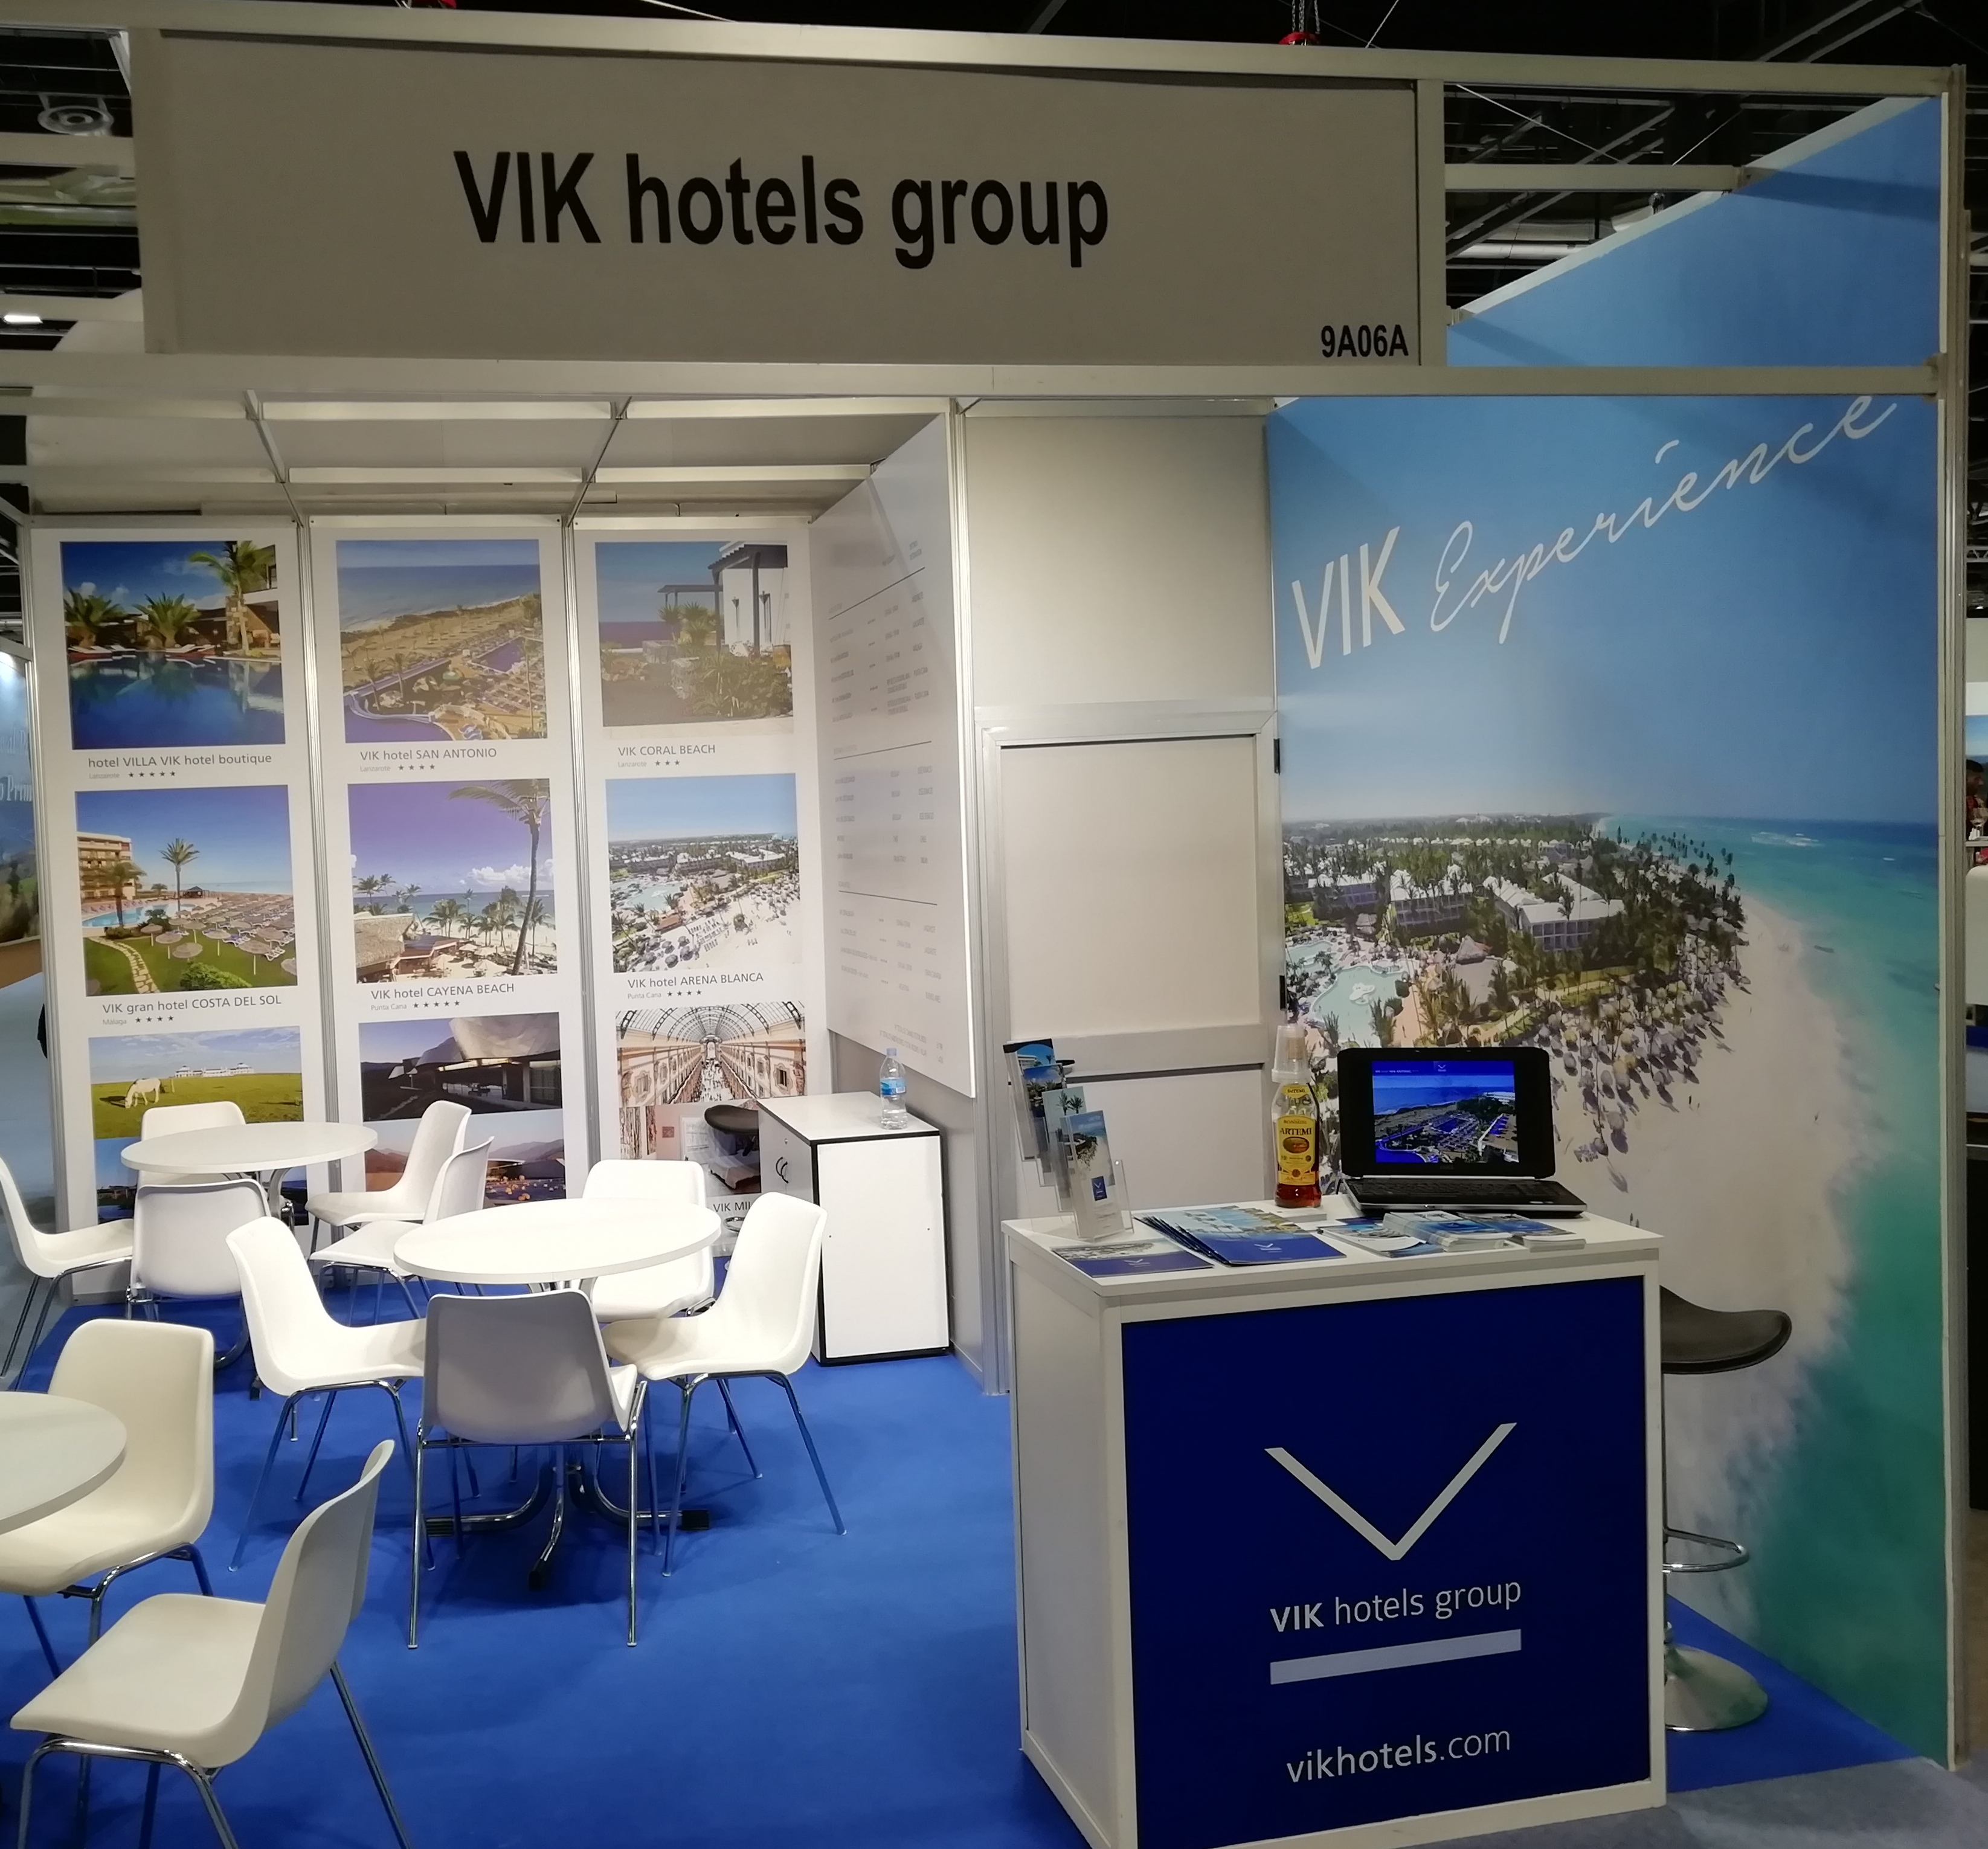 VMAR turismo, de la mano con la cadena VIK hotels group, vuelve a estar presente en FITUR, la cual cierra la edición de su 40 aniversario con un nuevo récord